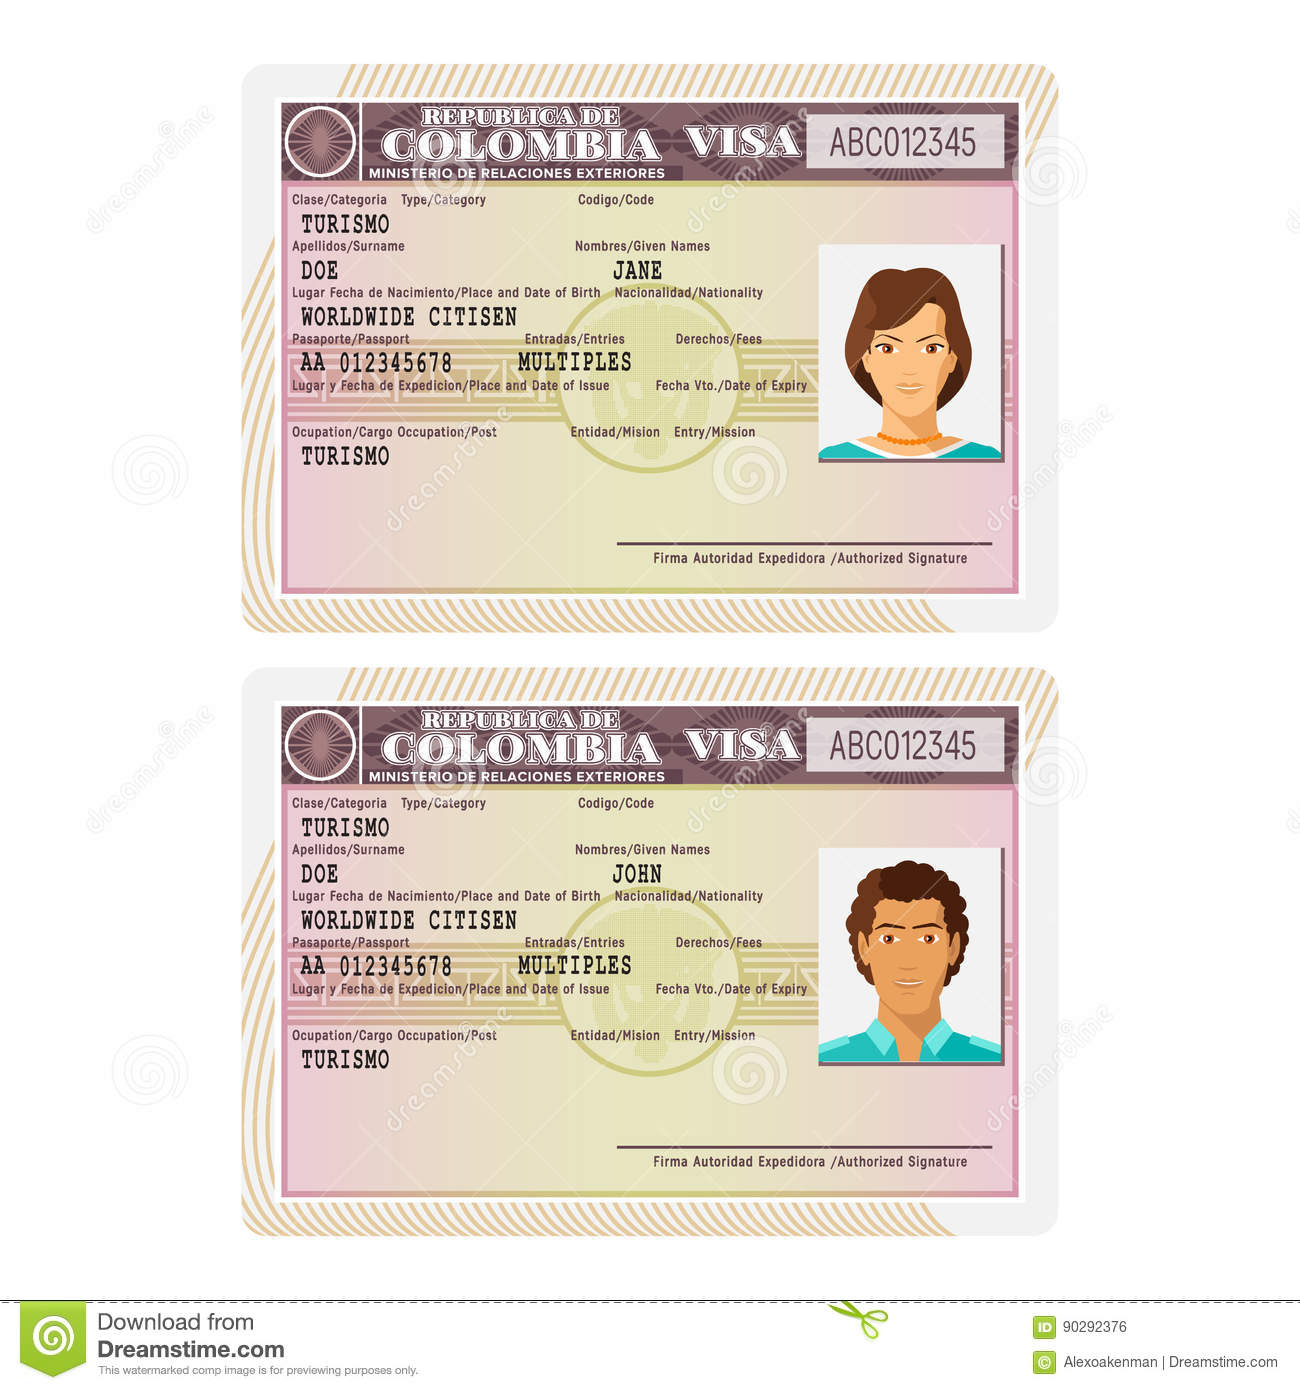 Visa là loại giấy tờ quan trọng nhất cho phép bạn được đặt chân đến Colombia